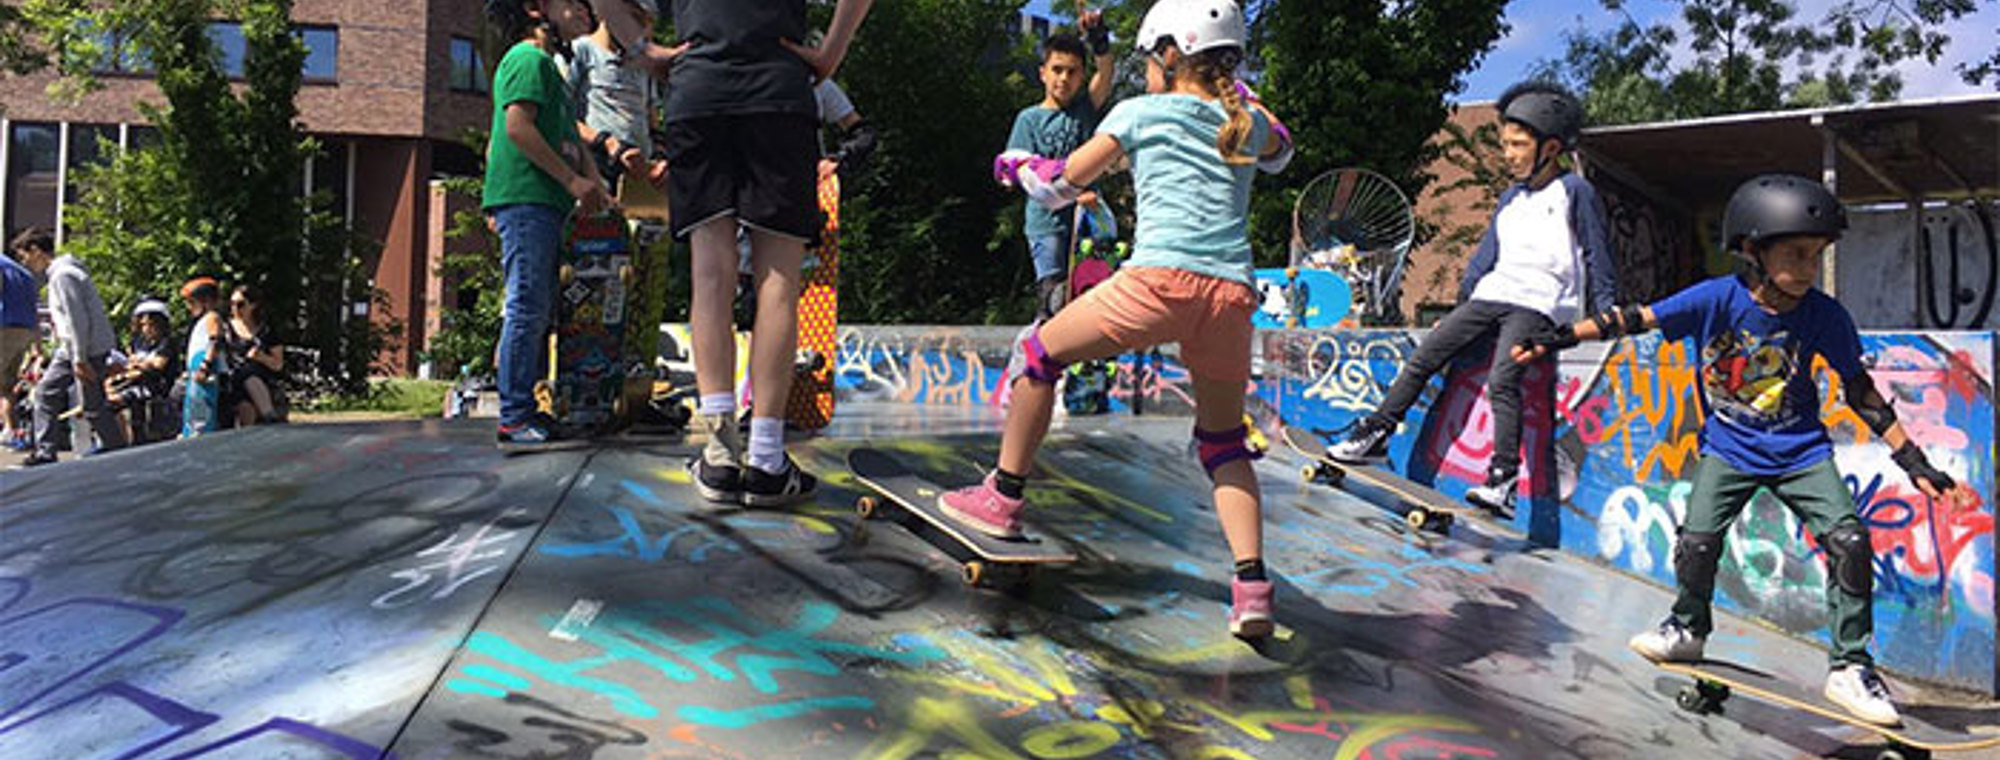 Skateboardles Haarlem 4 Juni 2017 2